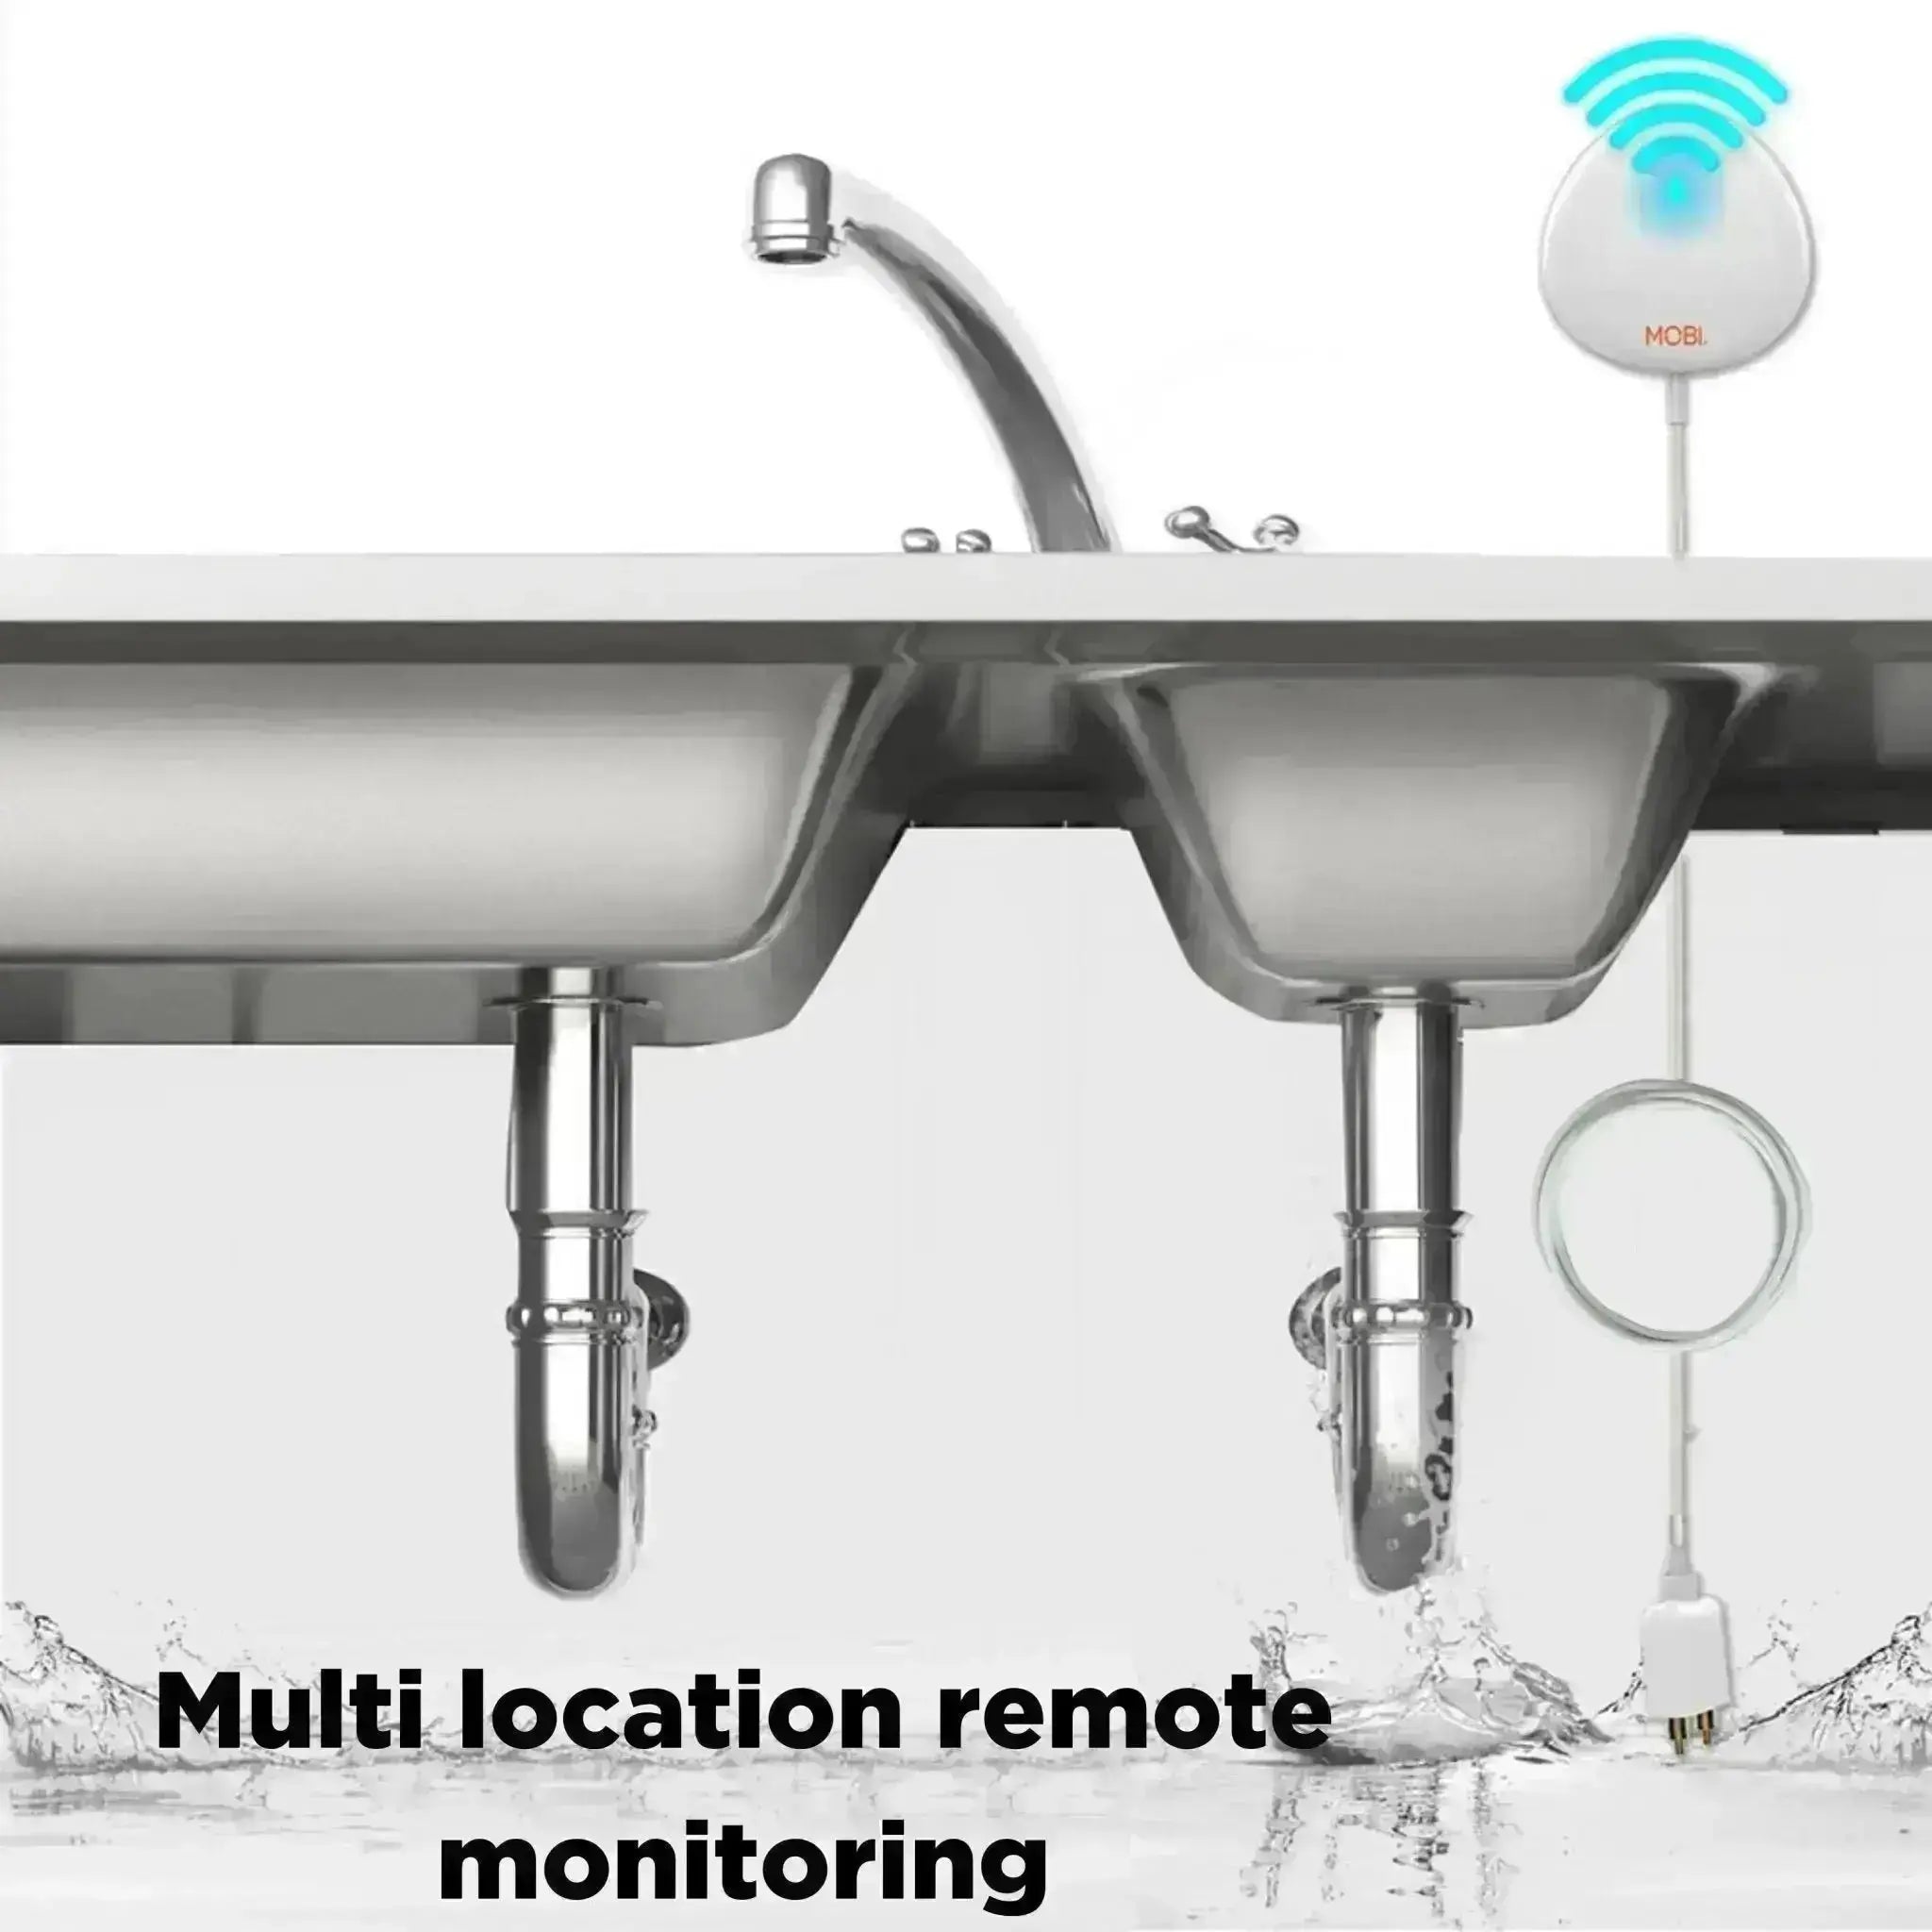 Smart Wi-Fi Water Leak Alert Sensor